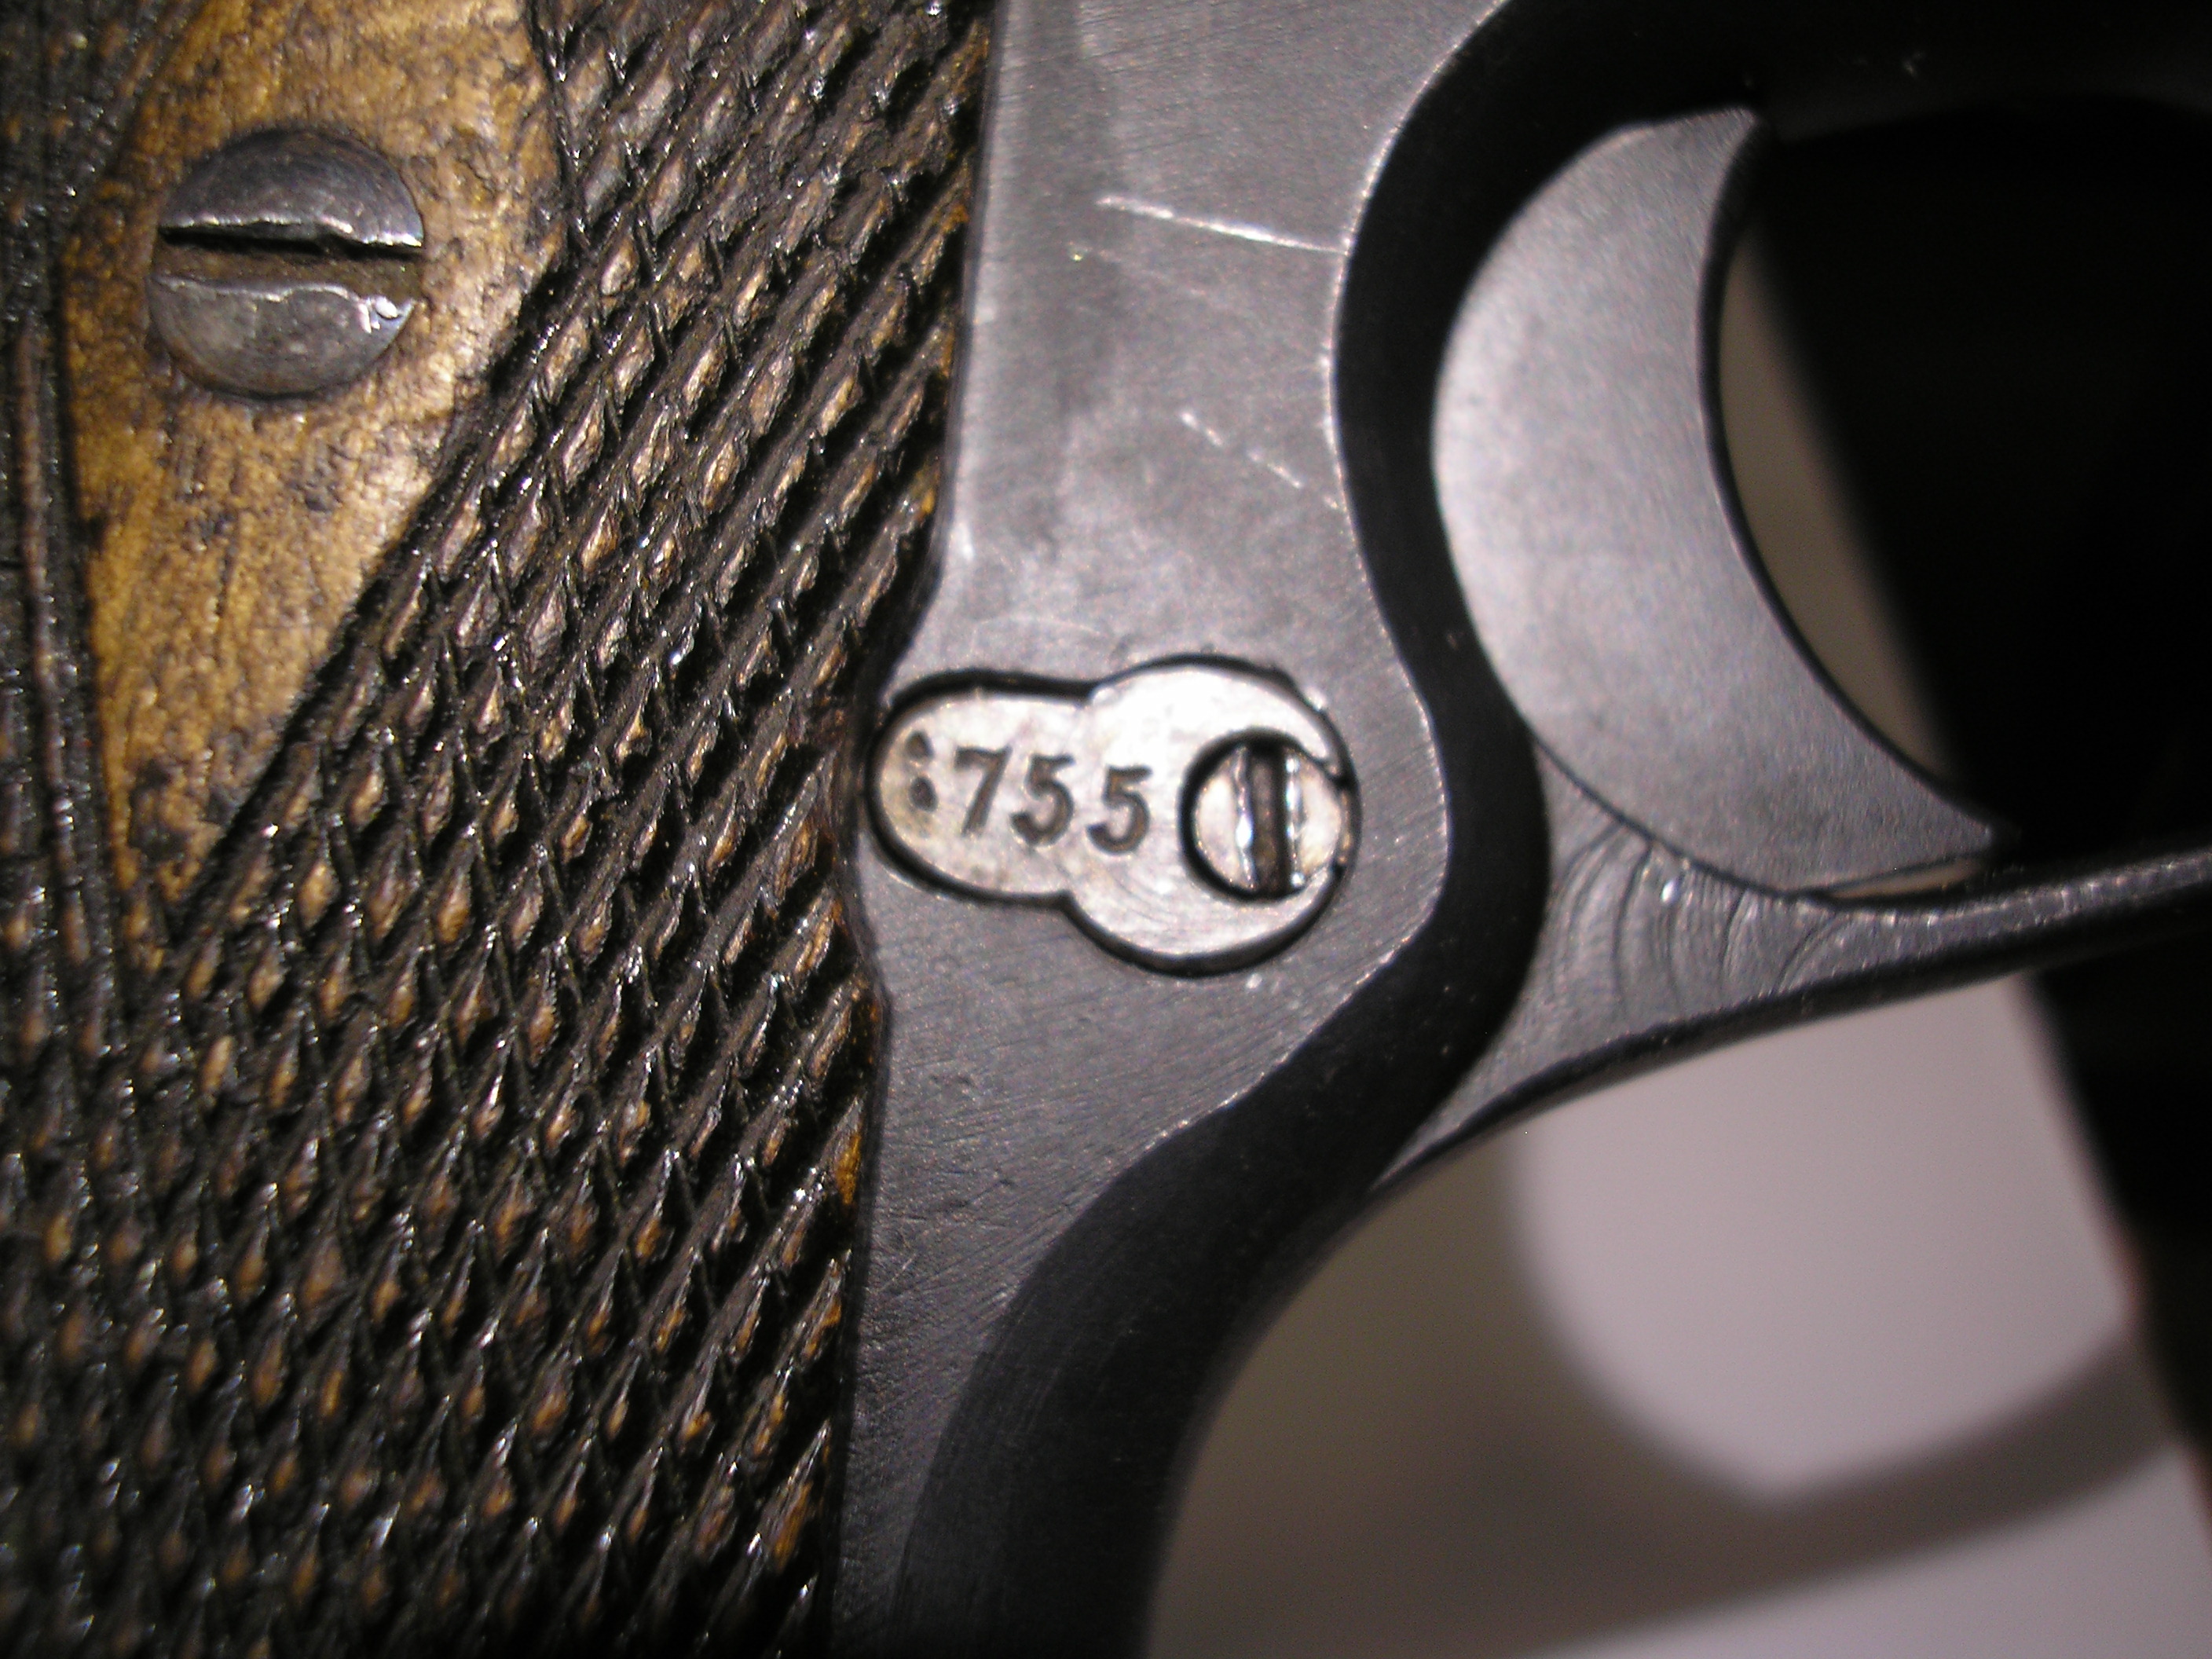 ./guns/pistol/bilder/Pistol-Kongsberg-M1914-1925-6755-7.JPG